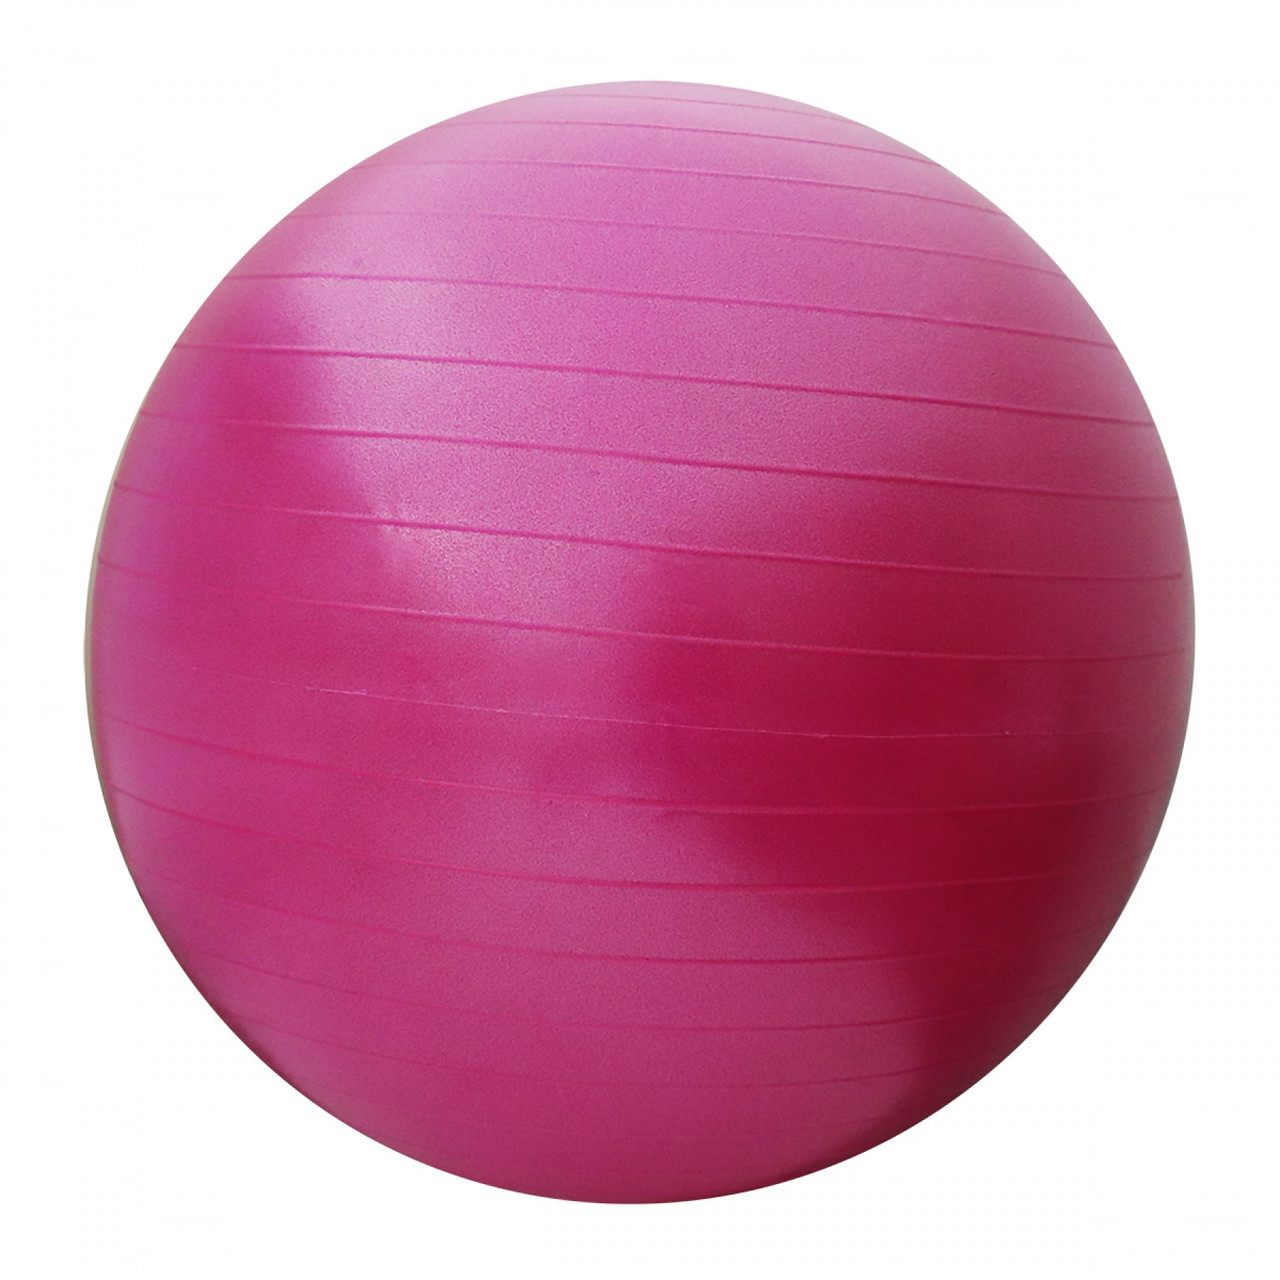 М'яч для фітнесу (фітбол) 55 см SportVida Anti-Burst SV-HK0287 рожевий. Гімнастичний м'яч, куля для фітнесу